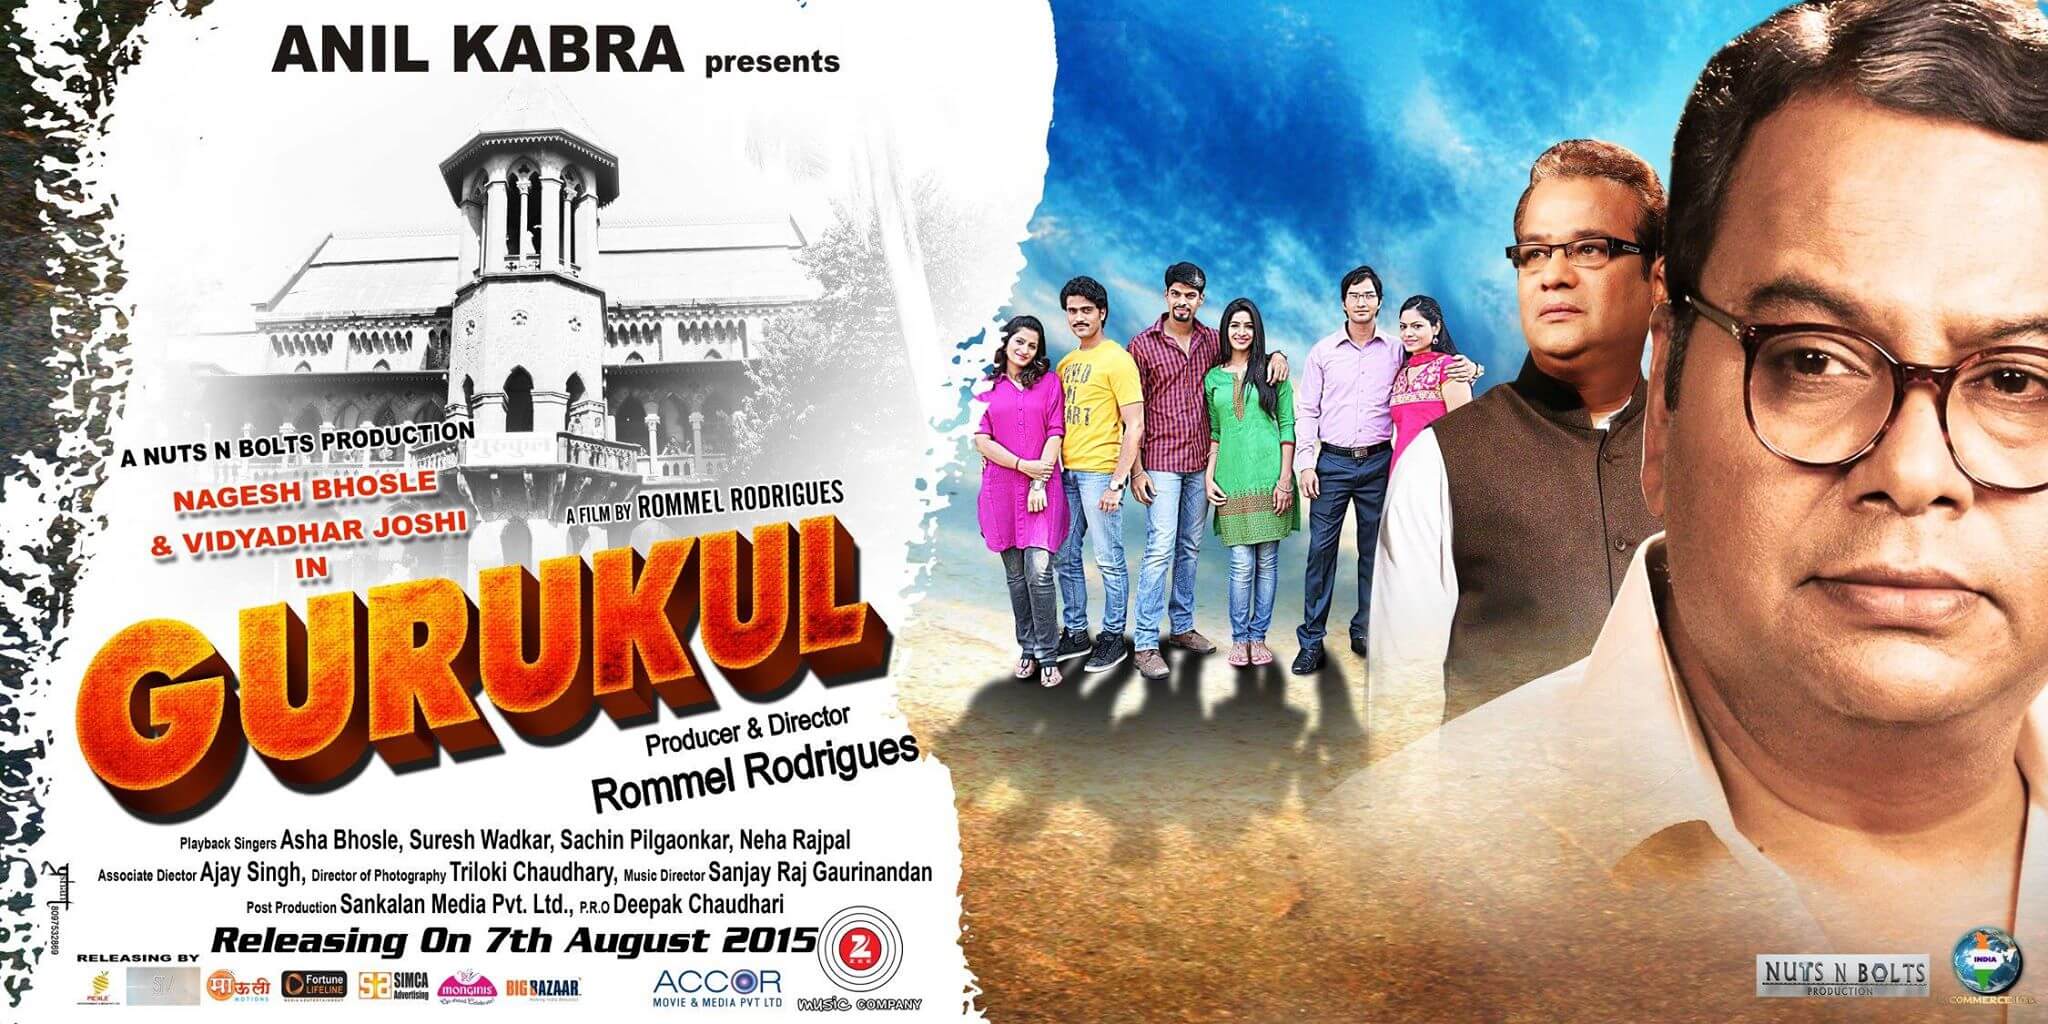 गुरुकुल: आप सभी इस भारतीय मराठी फिल्म के बारे में जानना चाहते हैं